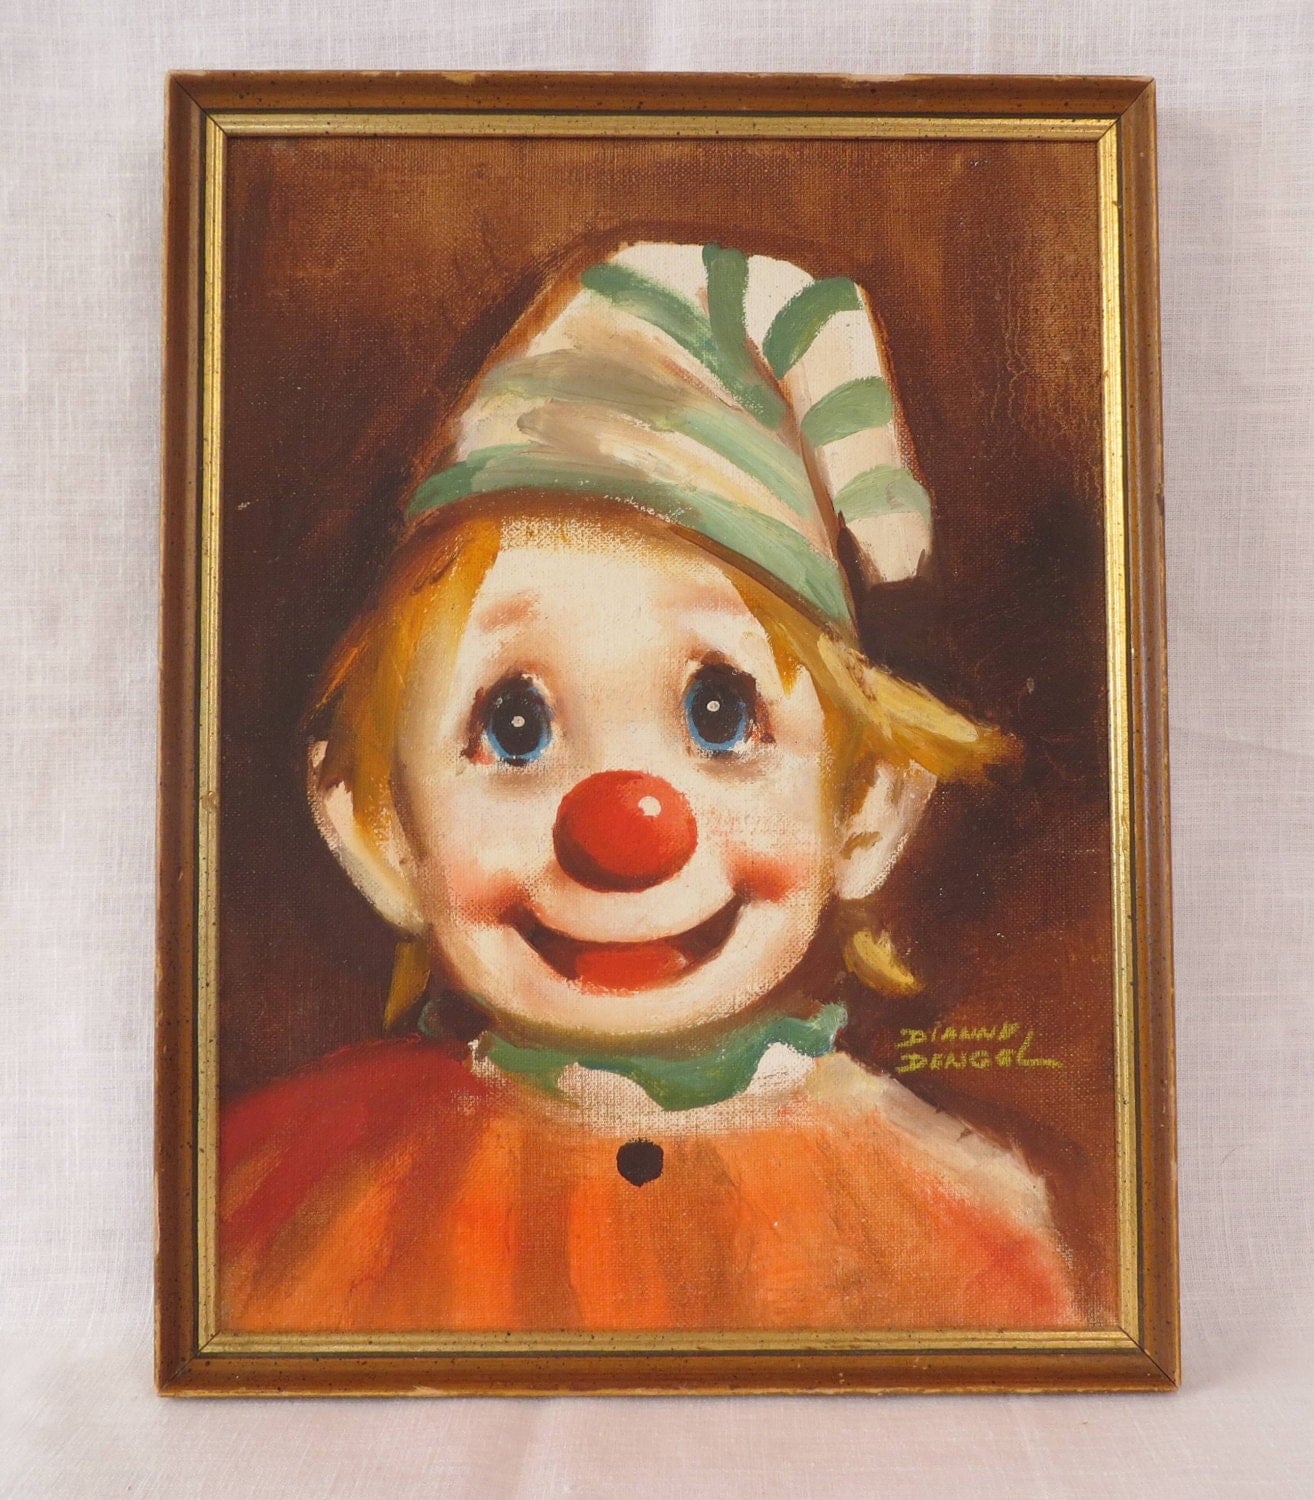 Vintage Signed Clown Painting by Dianne Dengel Original